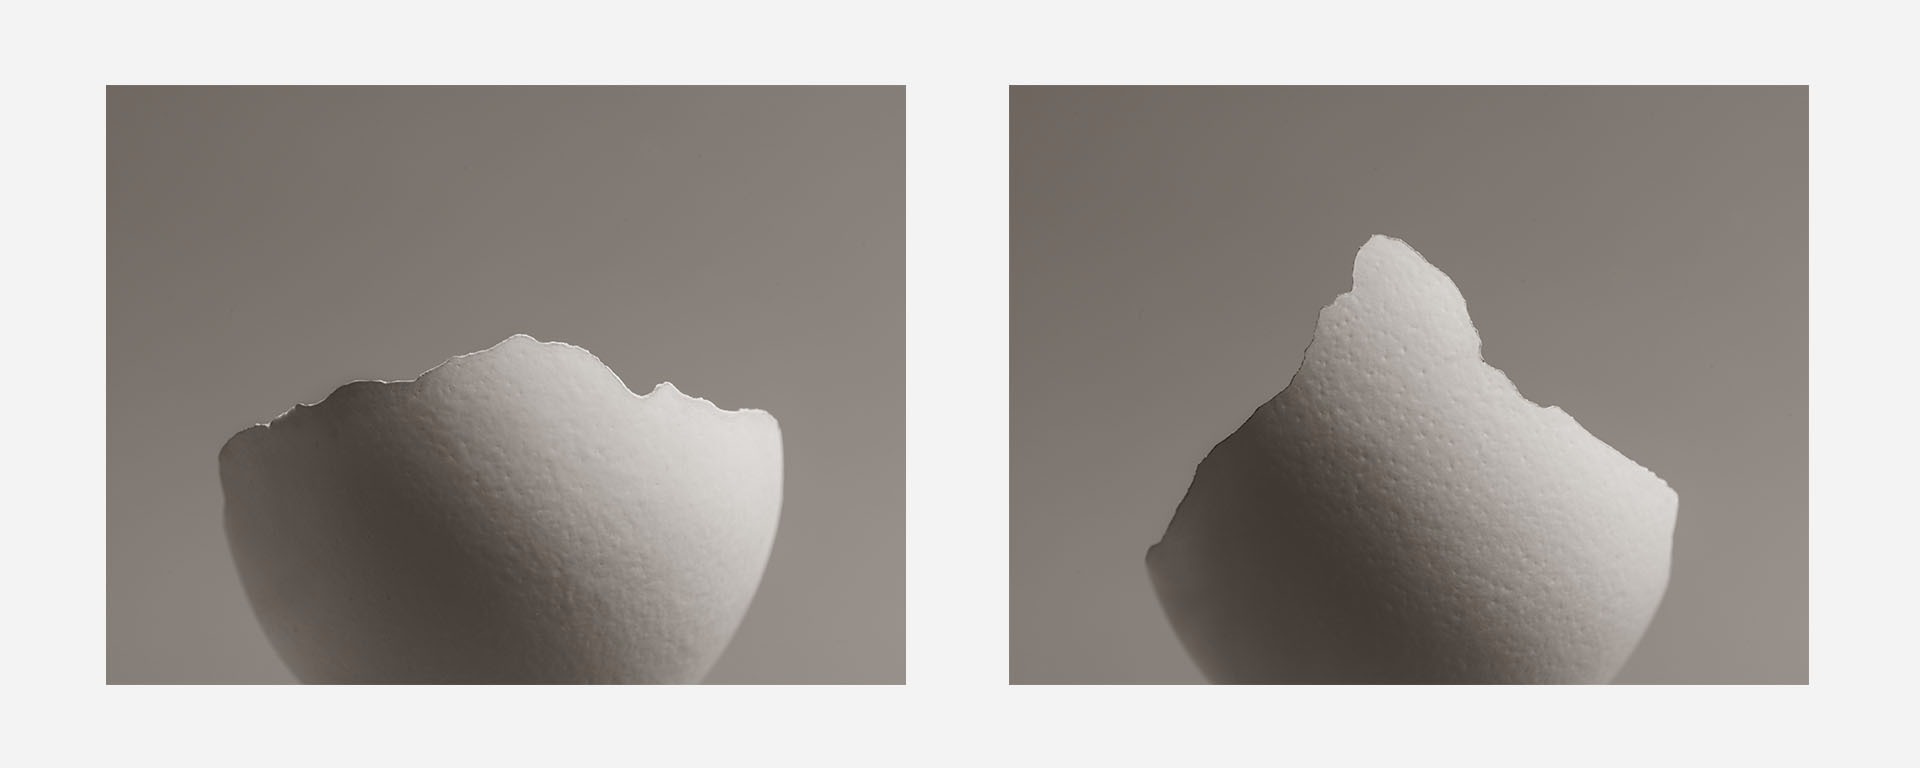 Uitgesneden eieren met een breukrandje in de vorm van de Mount Blanc en de Matterhorn